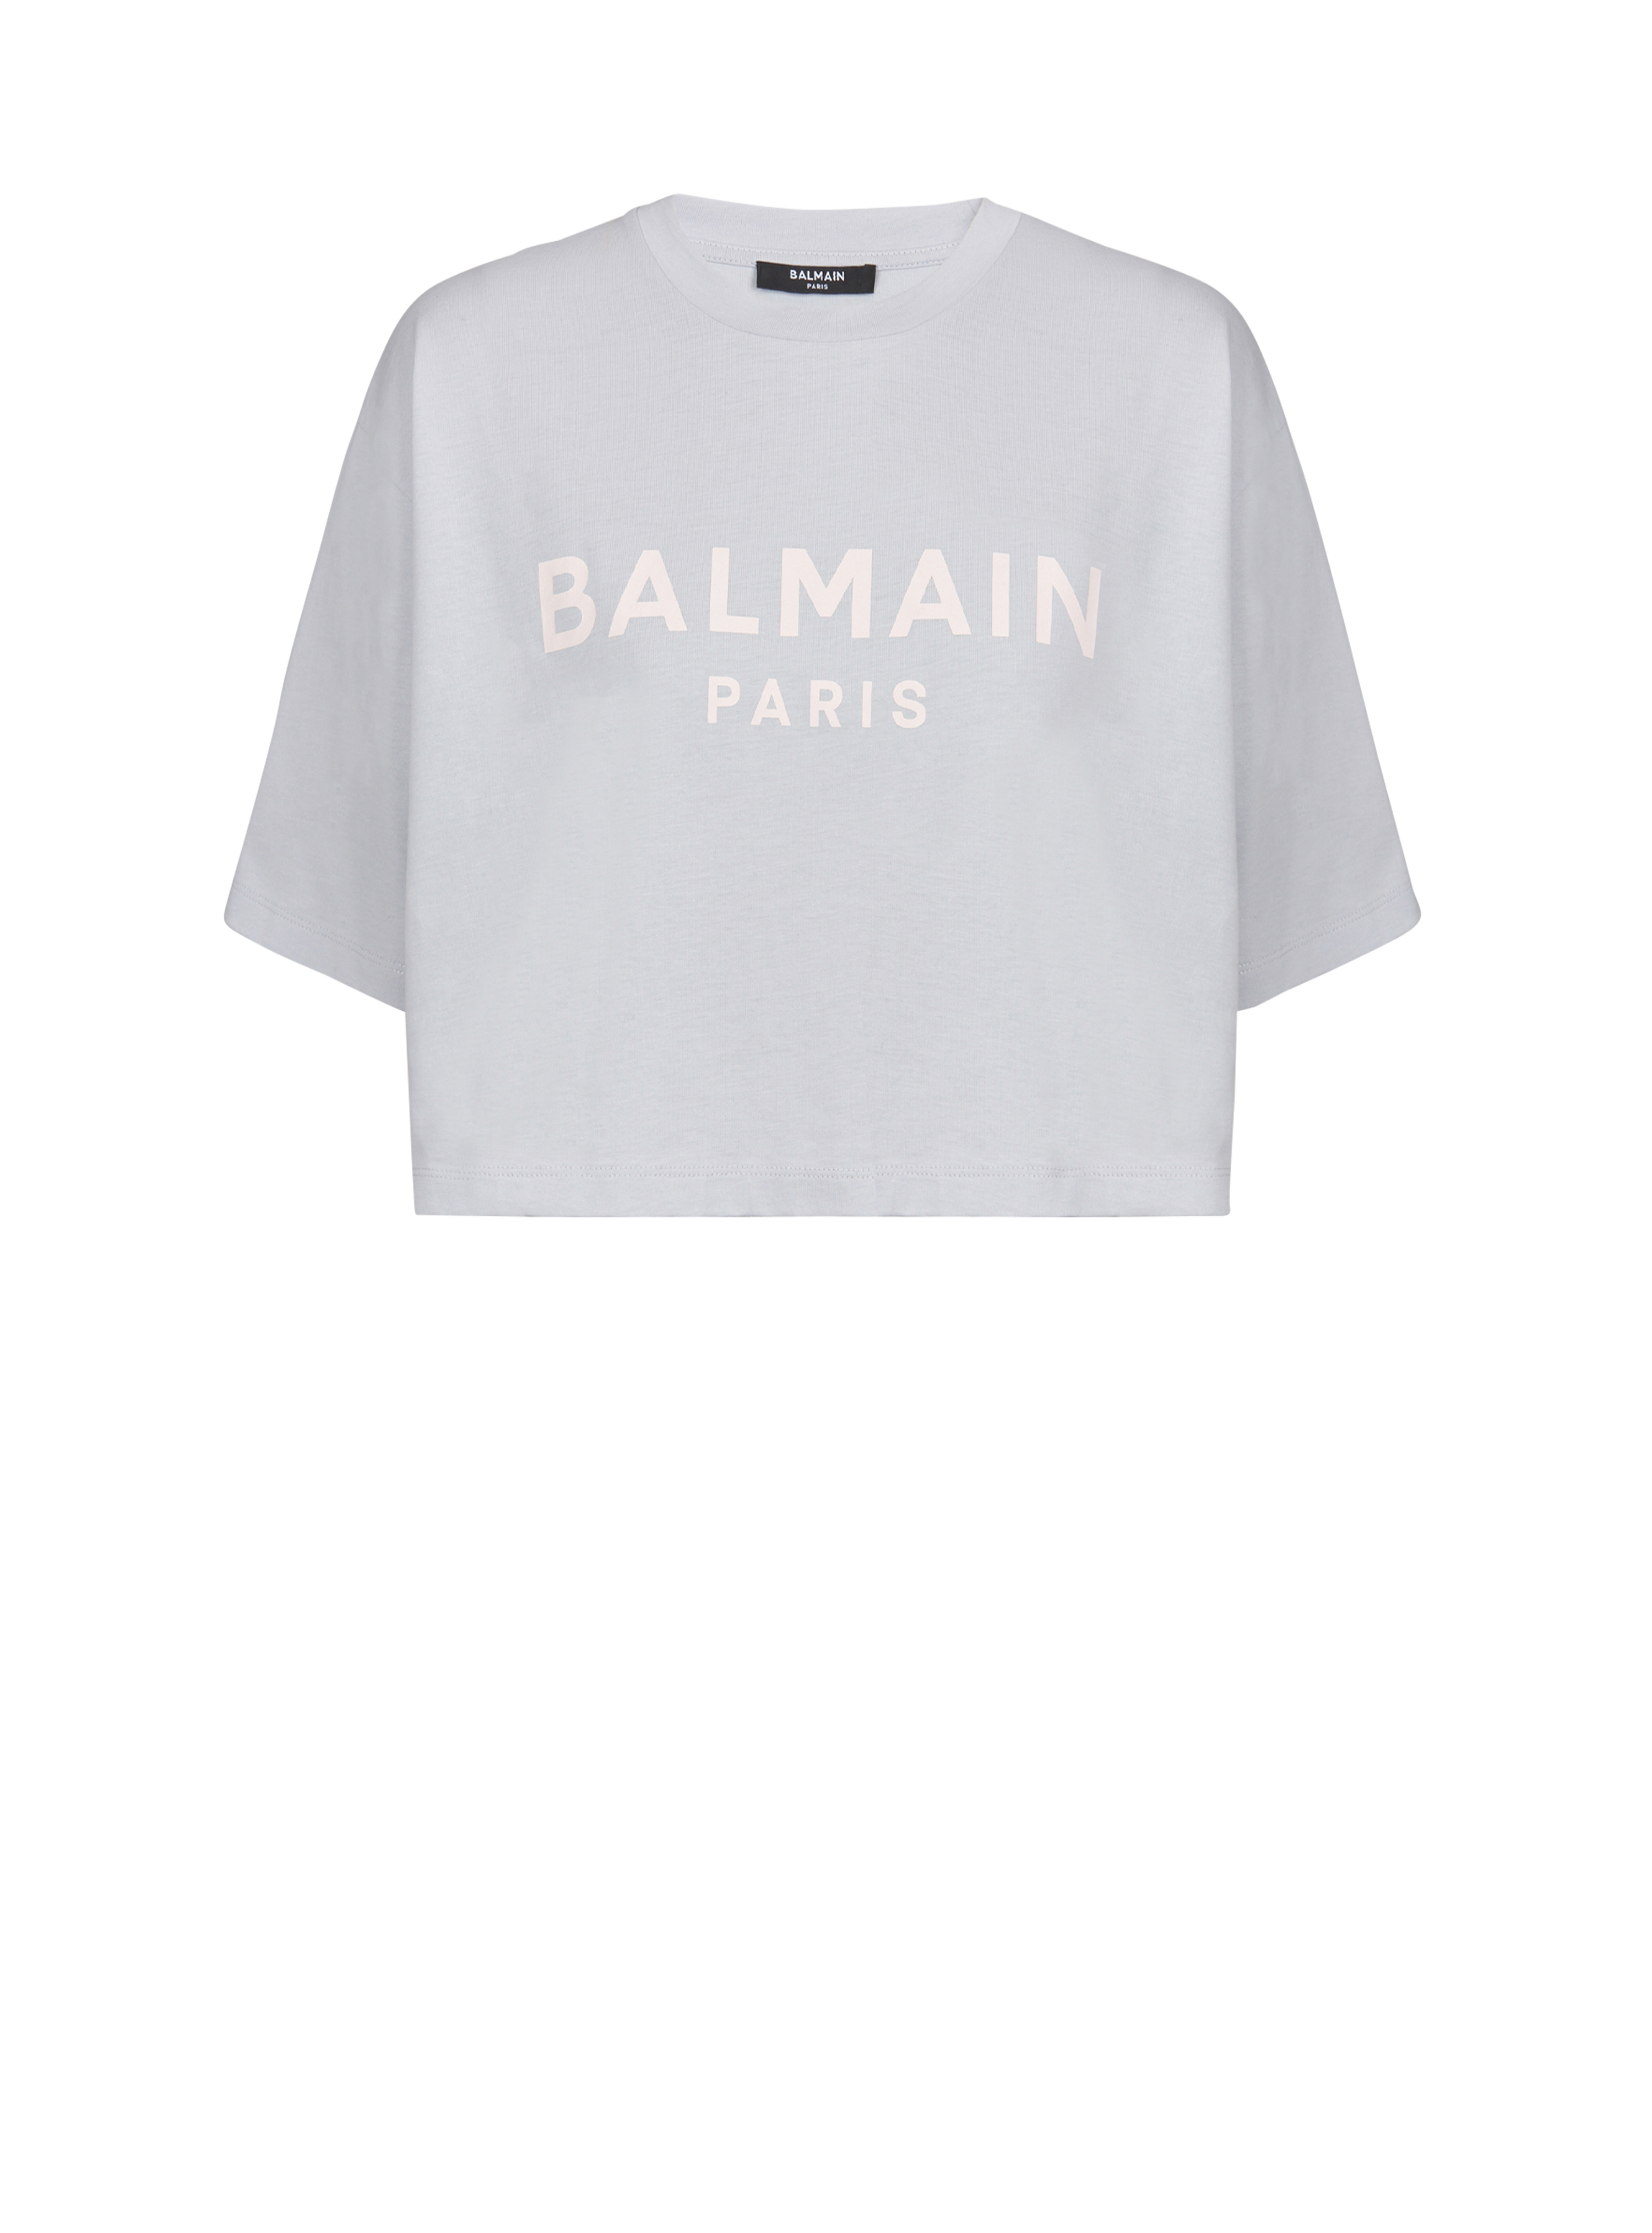 T-shirt corta in cotone con logo Balmain stampato, blu